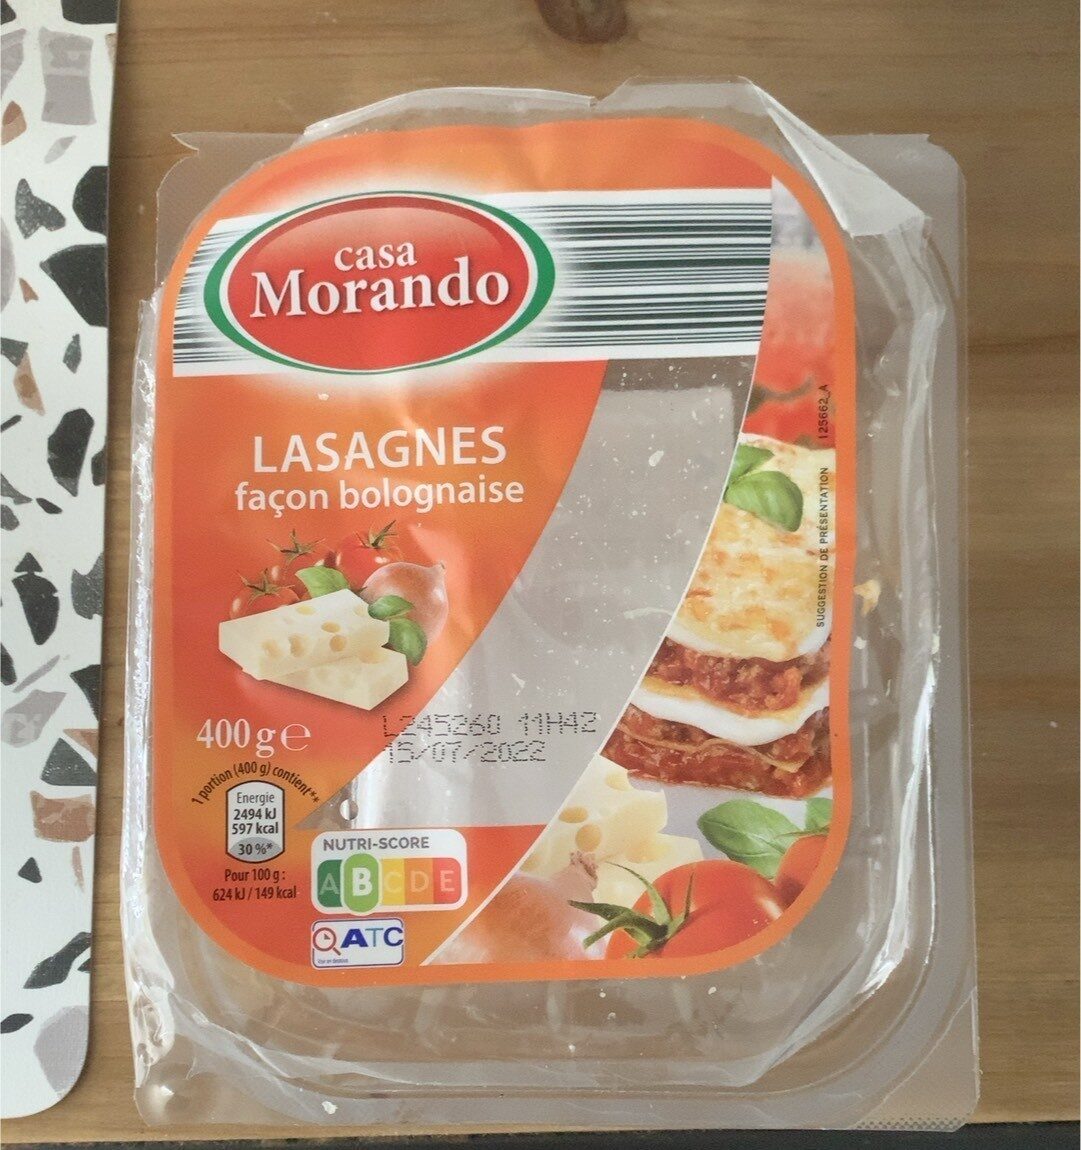 Lasagnes facon bolognaise - Product - fr